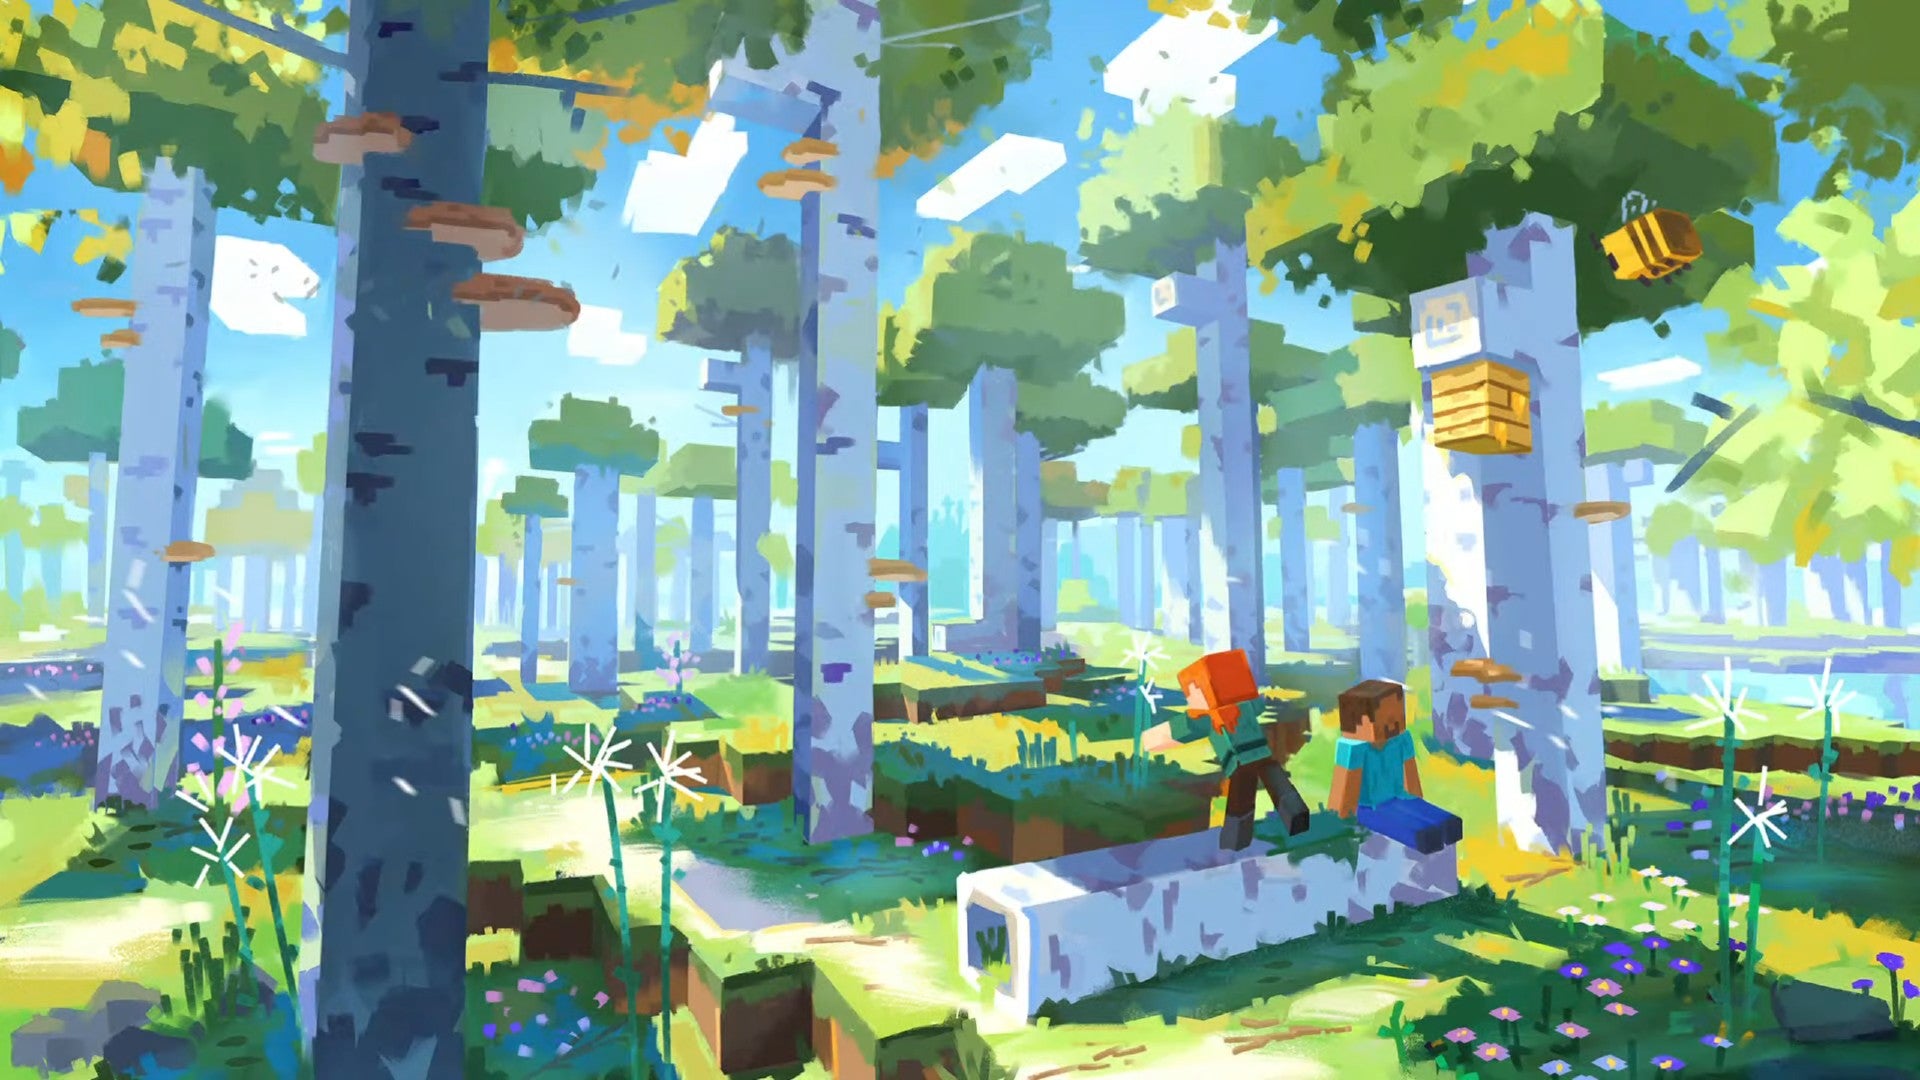 Minecraft'taki yeni huş ağacı ormanının konsept sanatı, daha uzun ağaçlarla biyom çeşitliliği değişikliklerini gösteriyor